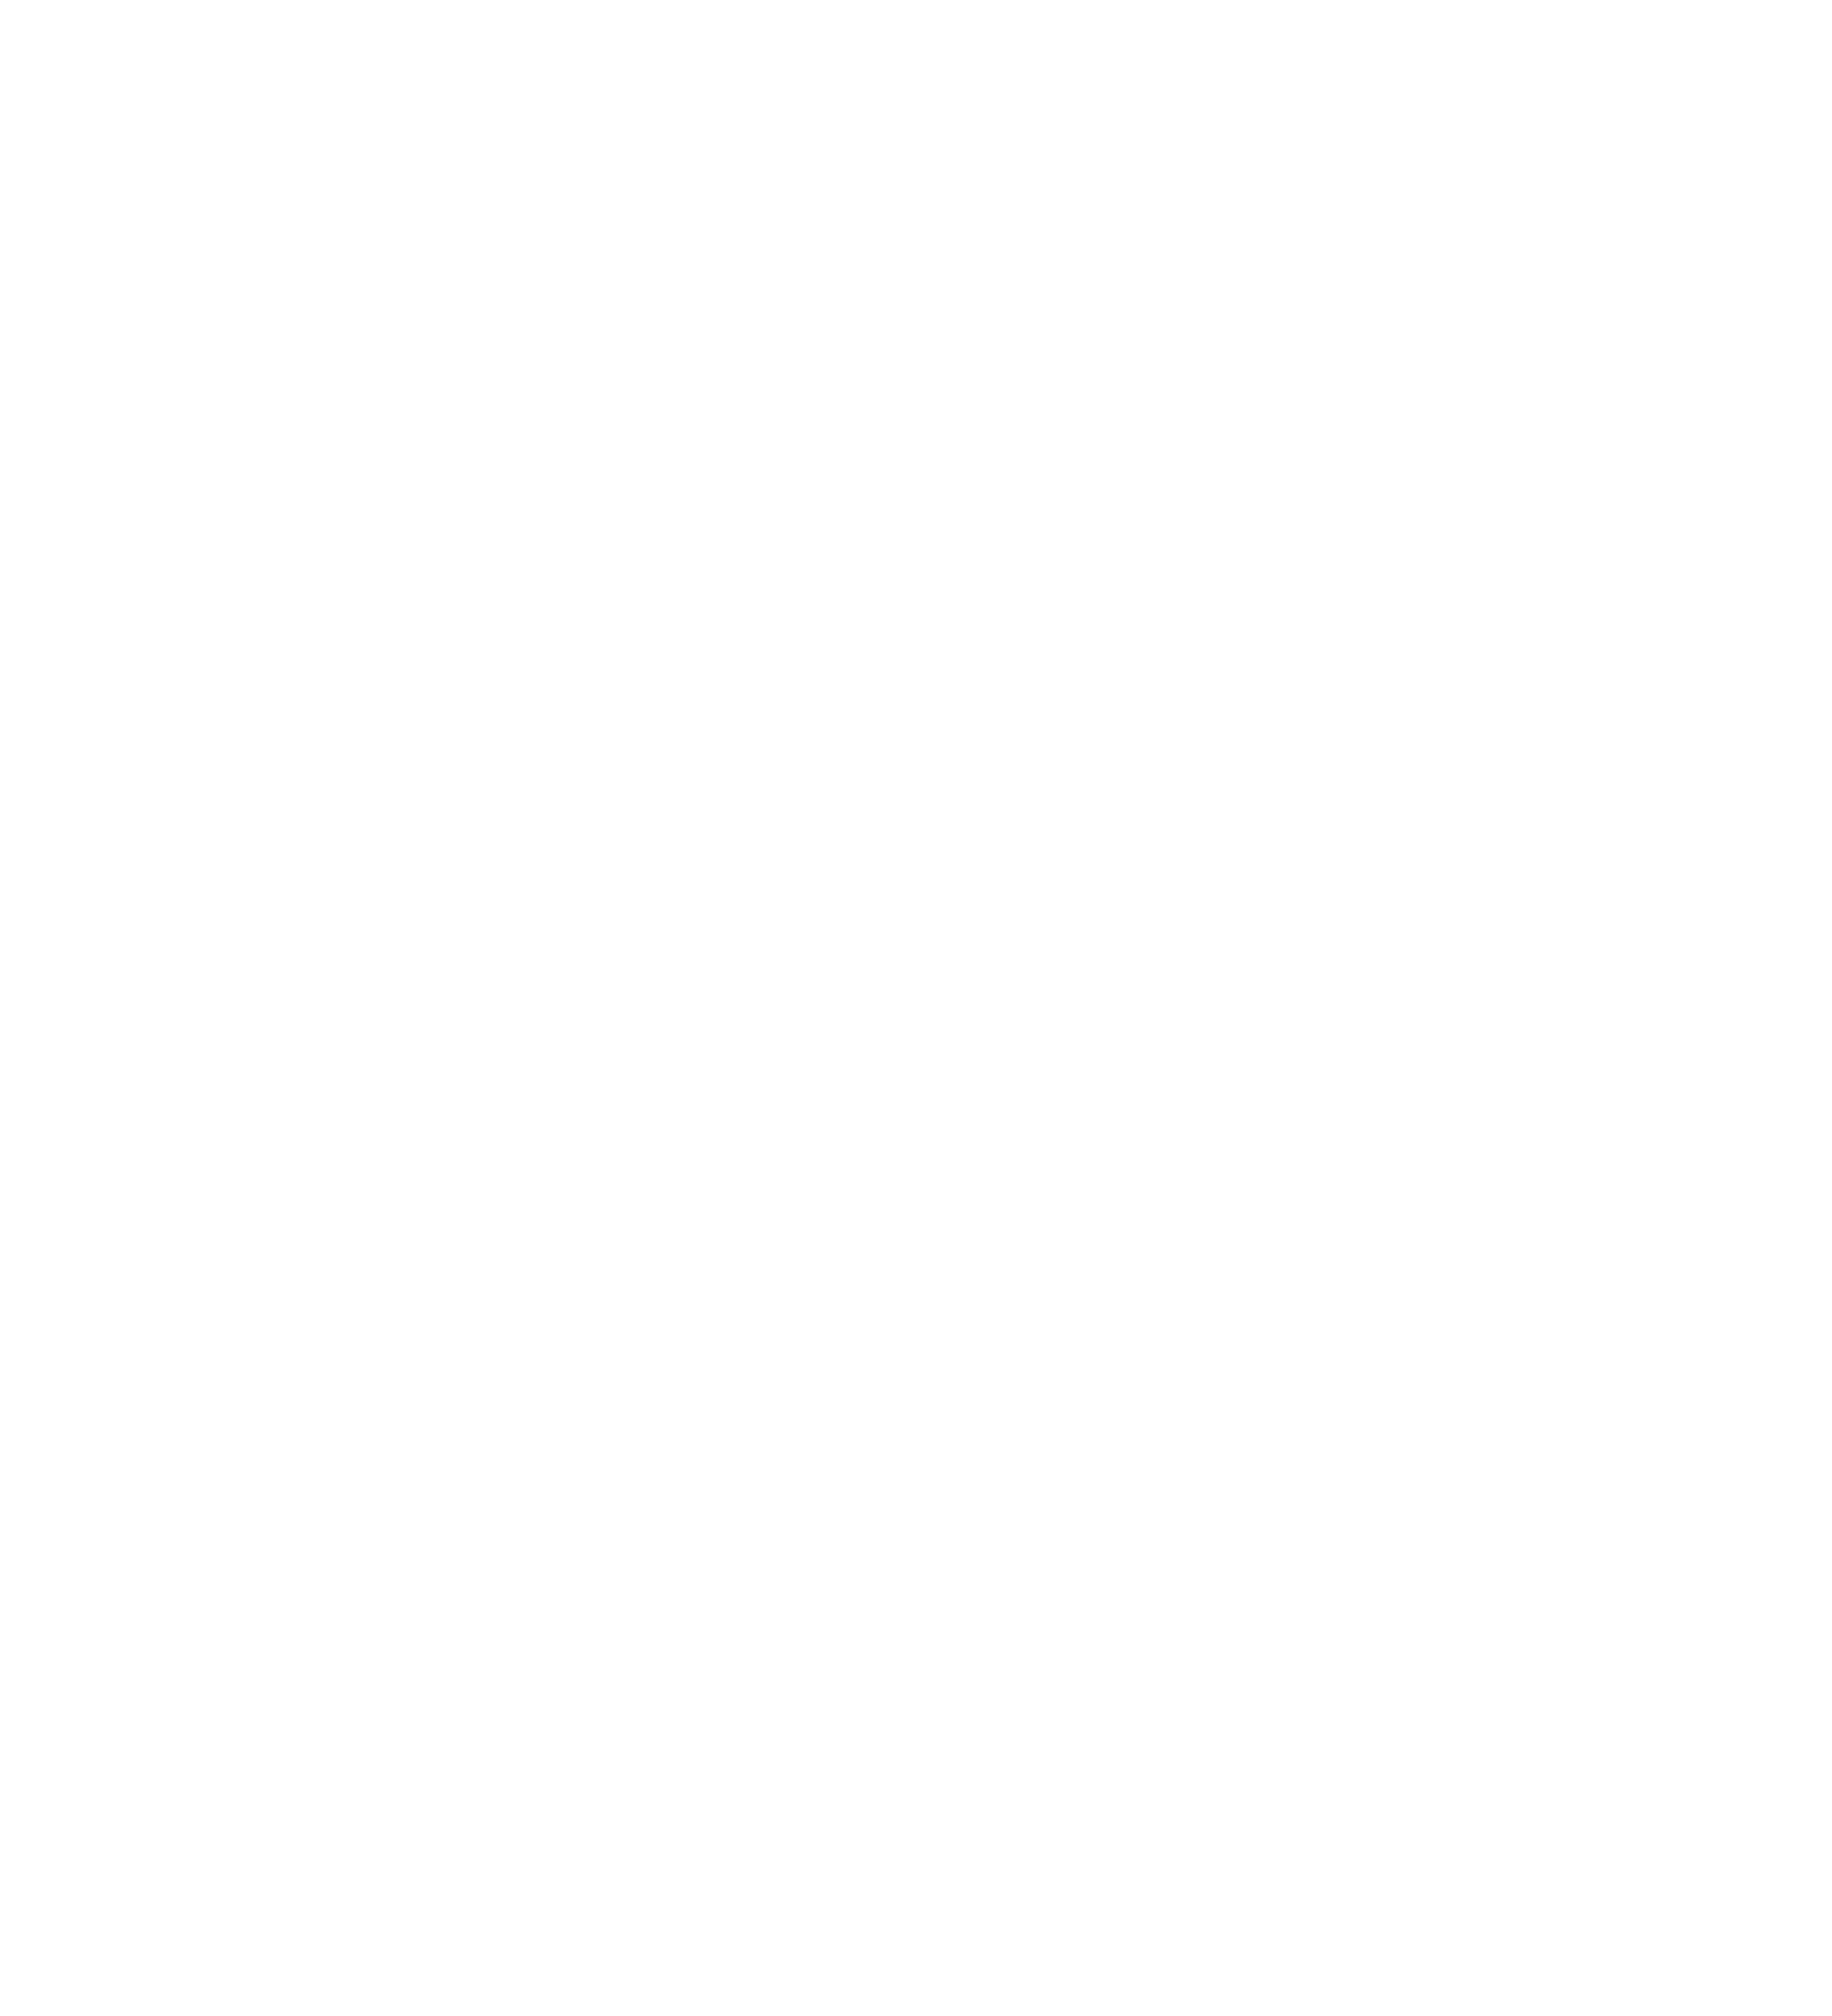 Clube Pelicas São Silvestre da Pequenada